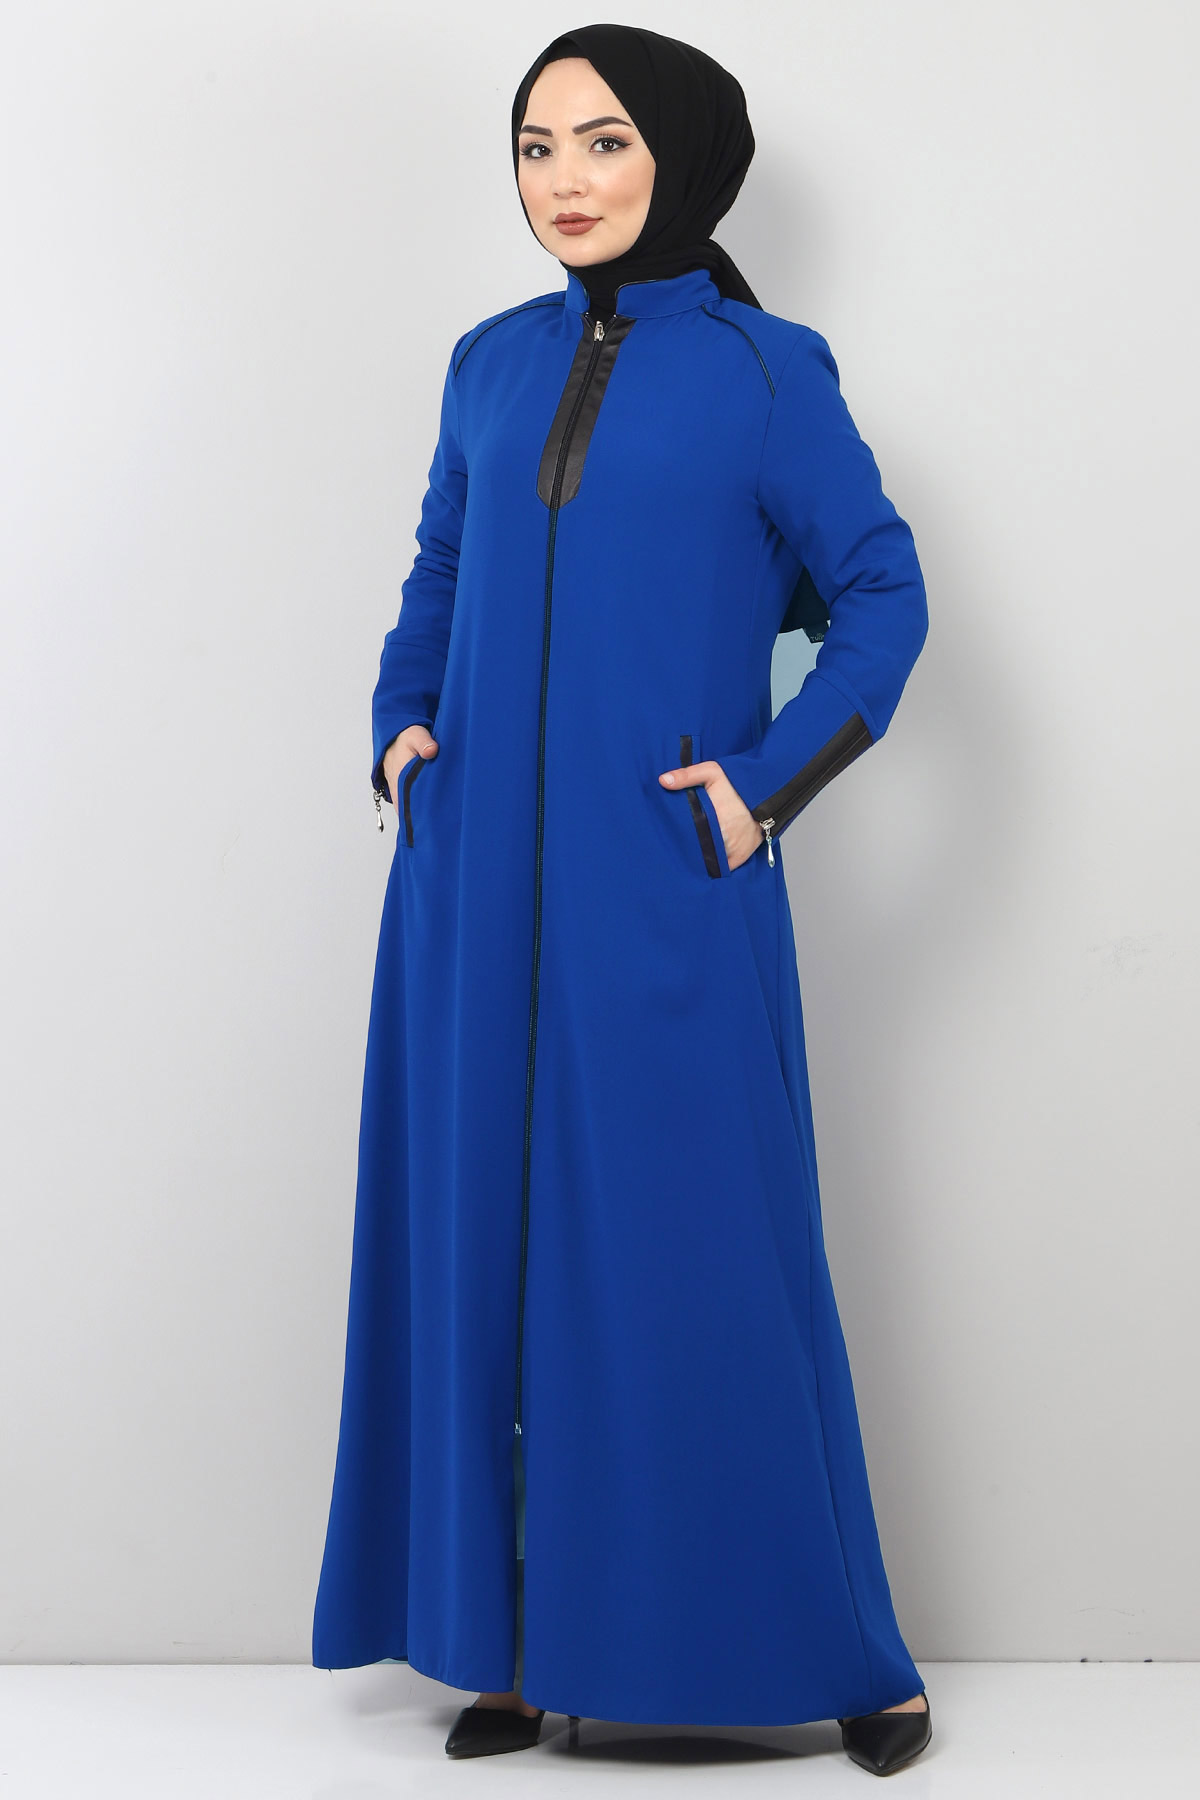 Tesettür Dünyası - Zipper Detailed Hijab Abaya TSD2201 Indigo